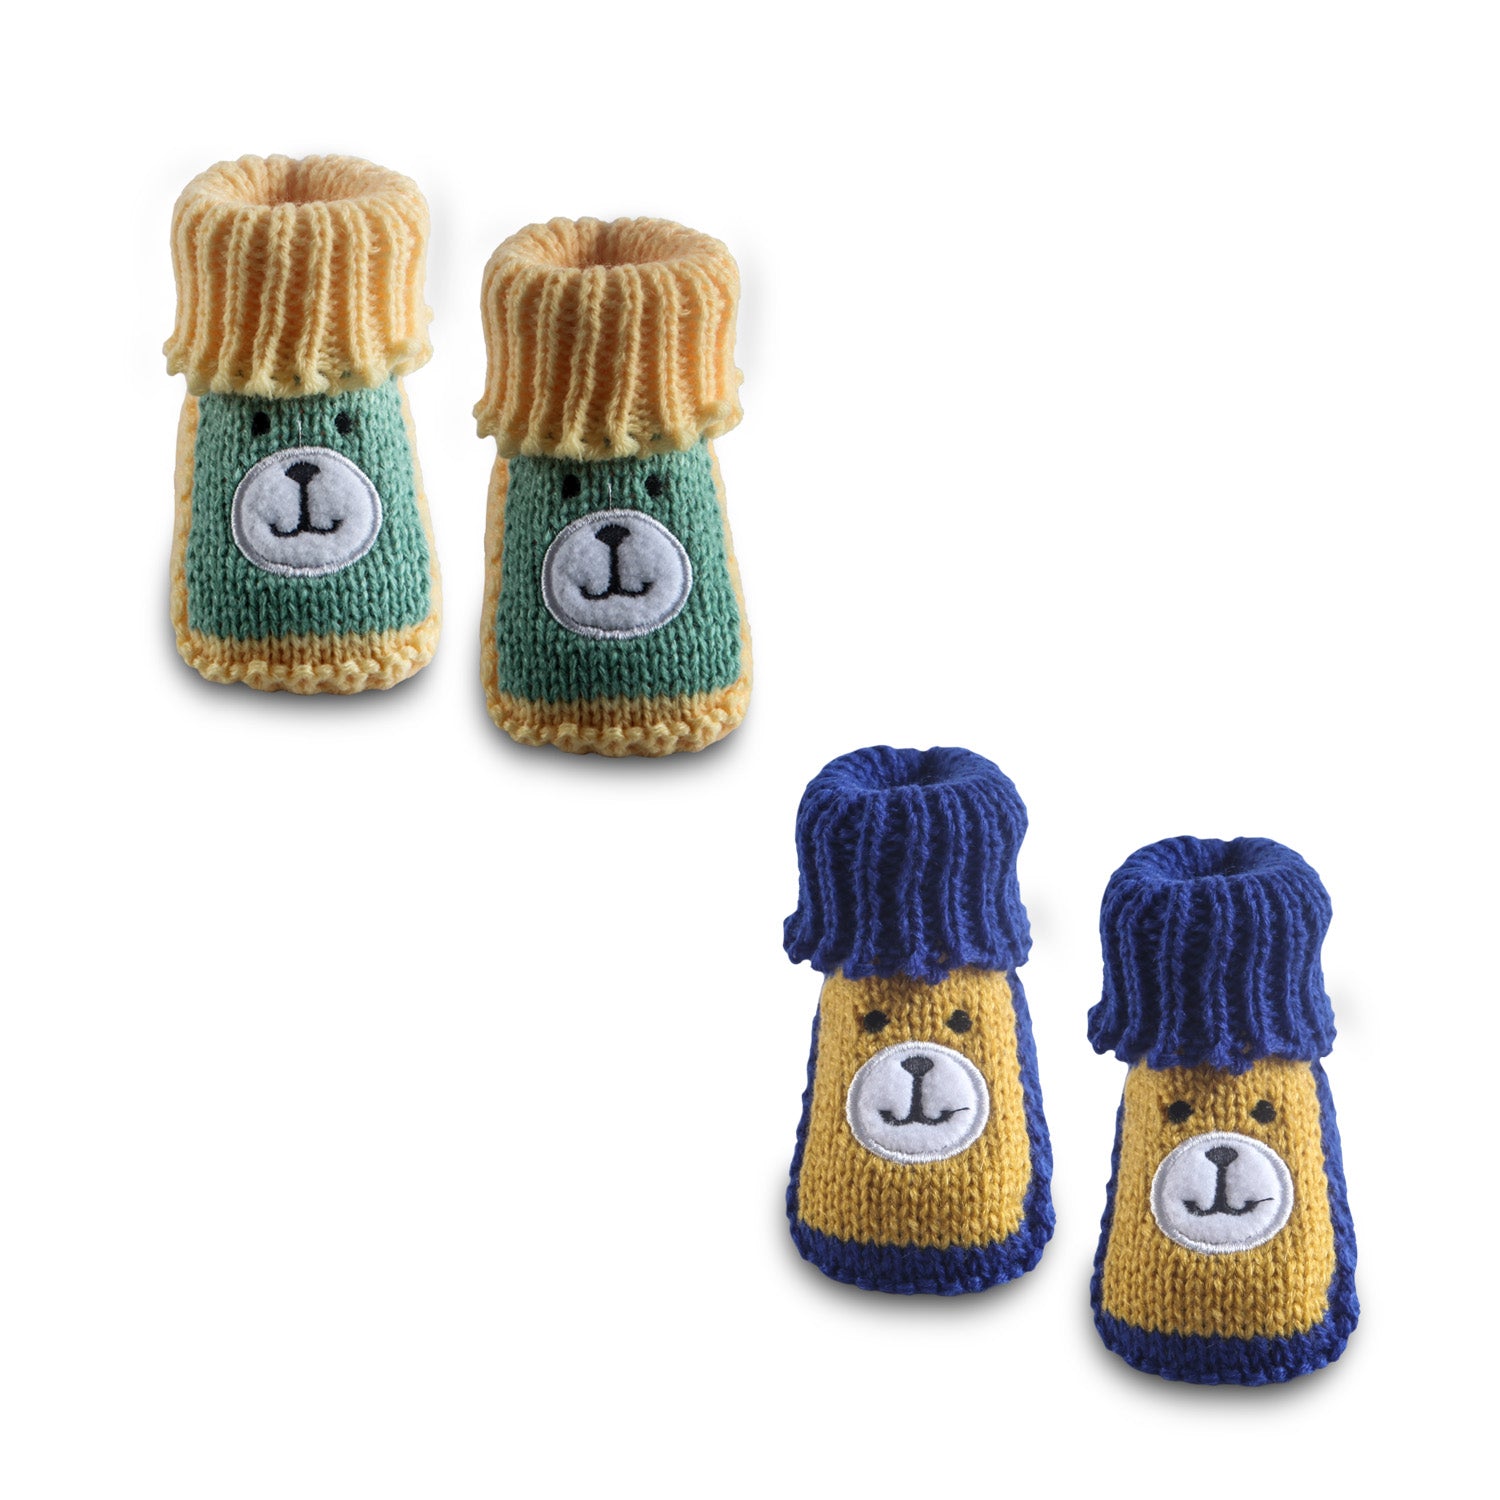 Newborn Crochet Woollen Booties Teddy - Yellow, Blue - Baby Moo